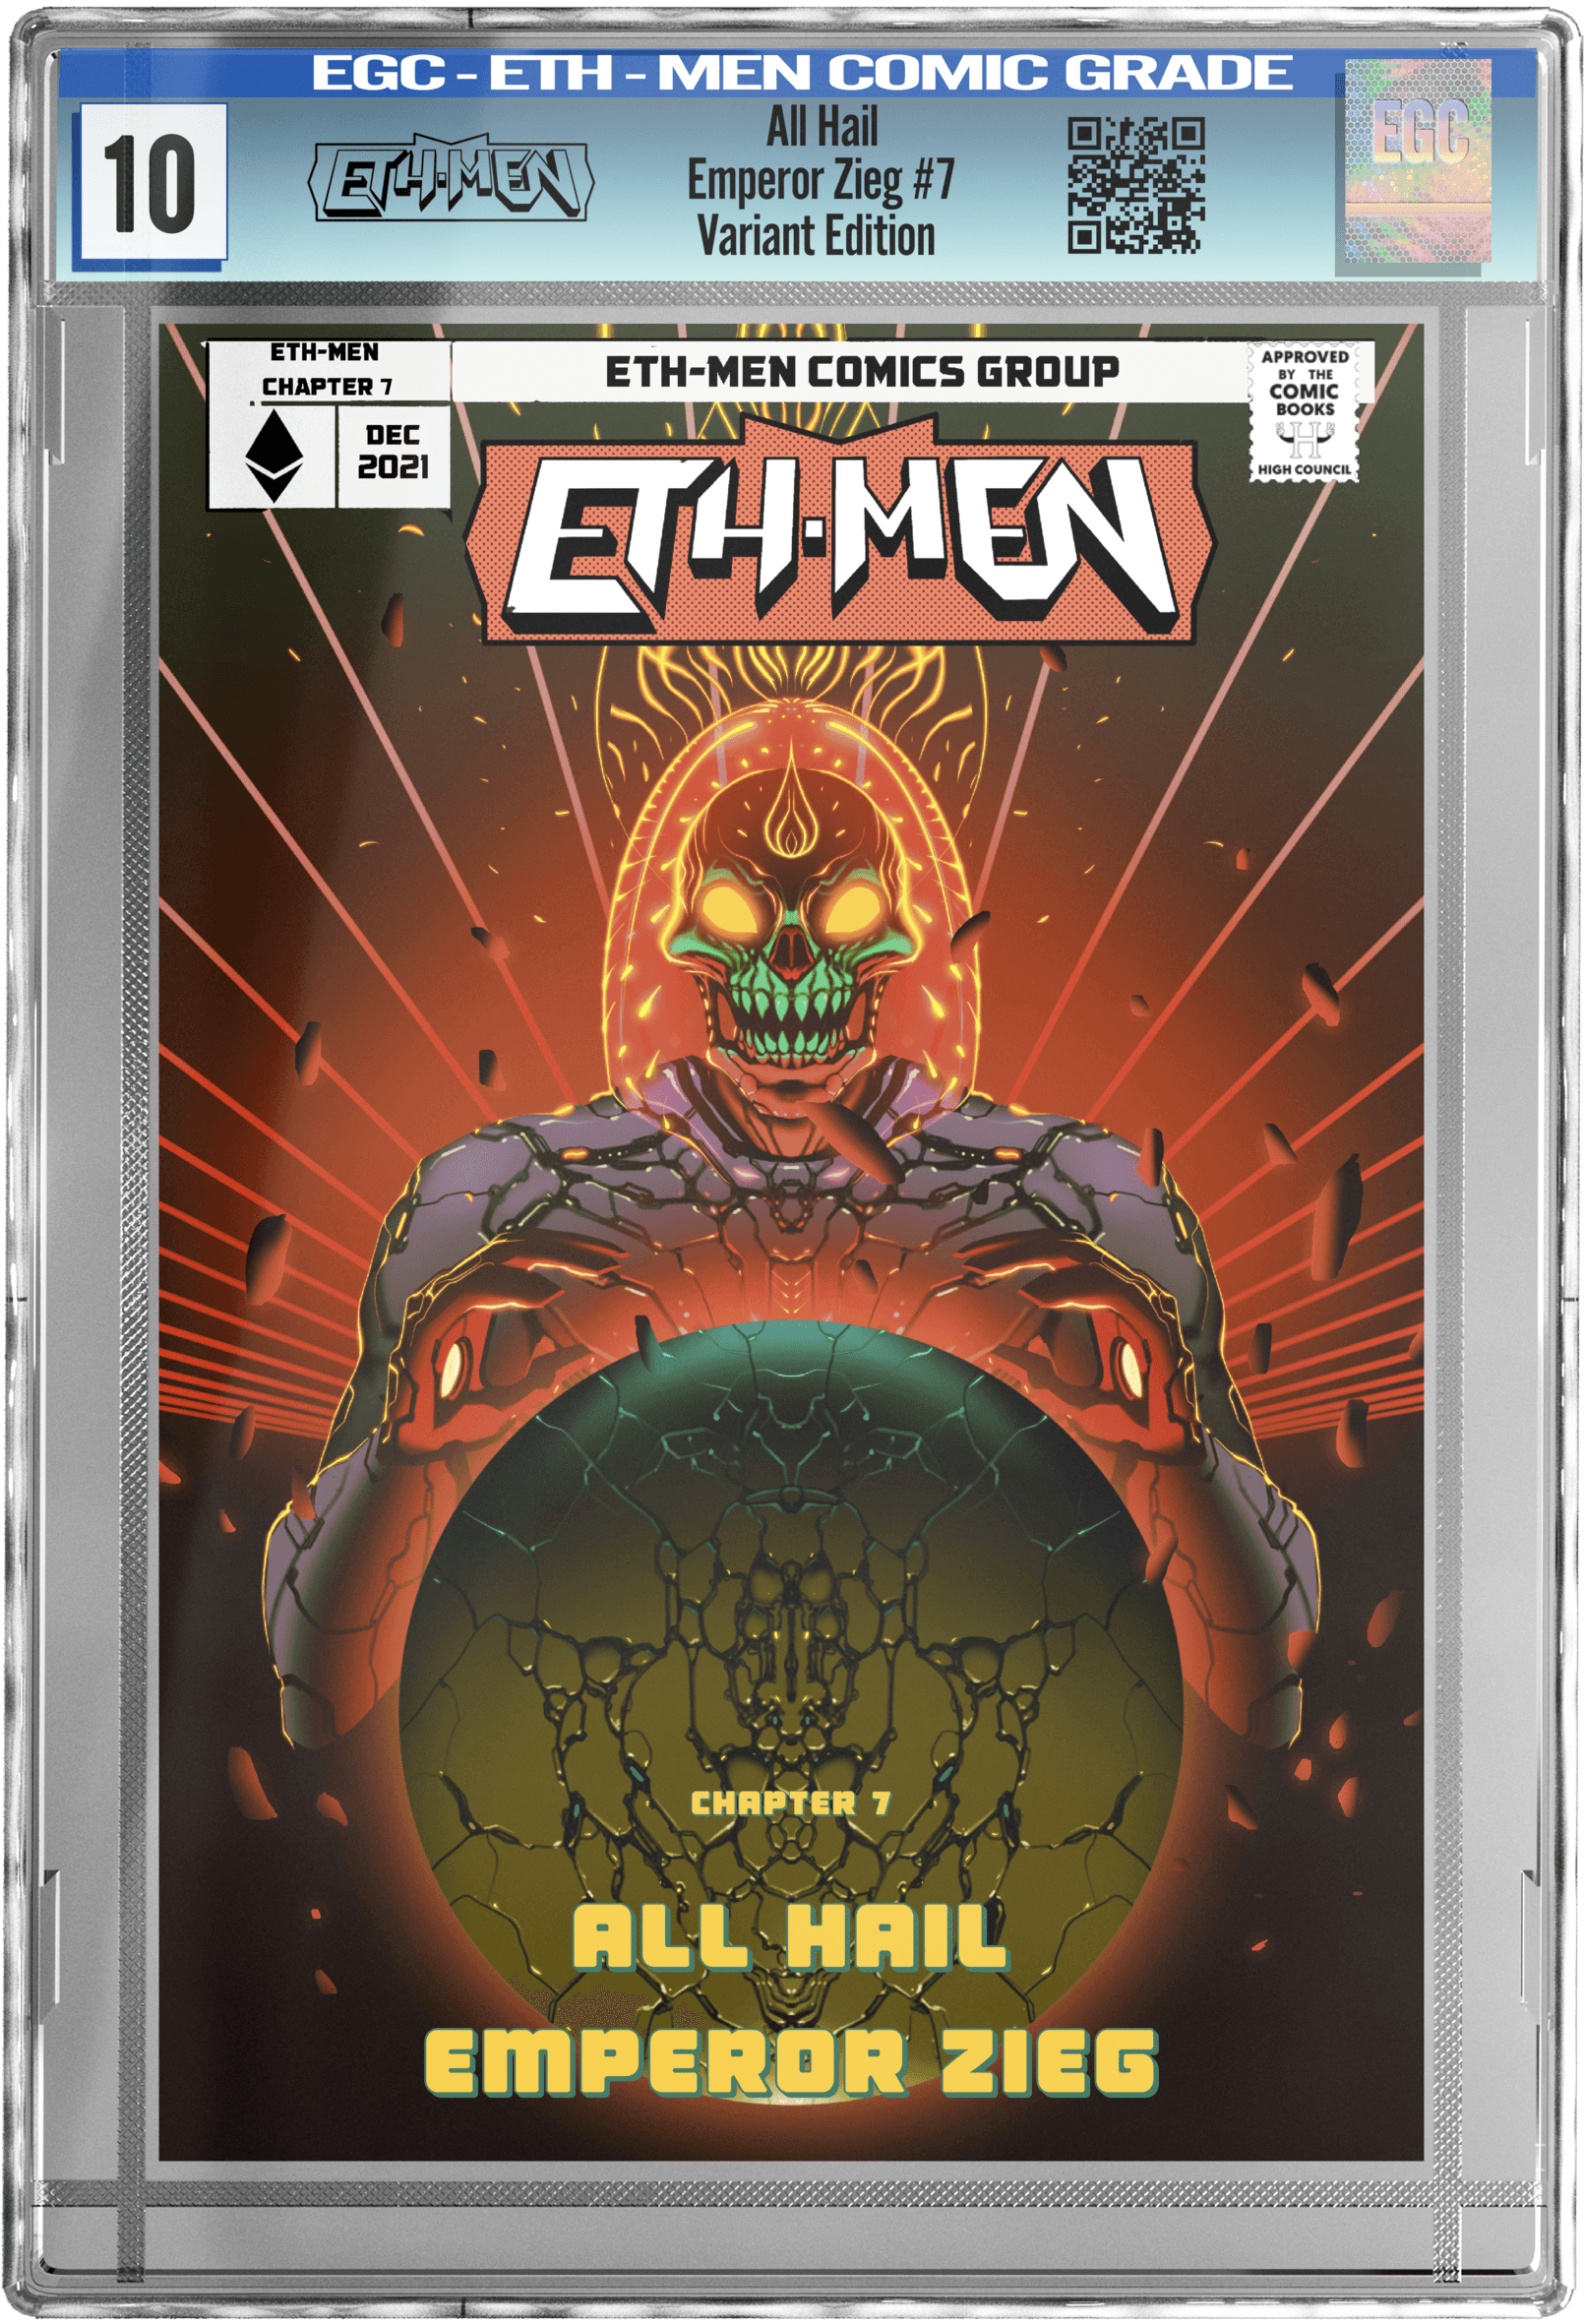 ETH-MEN: All Hail Emperor Zieg - Special edition